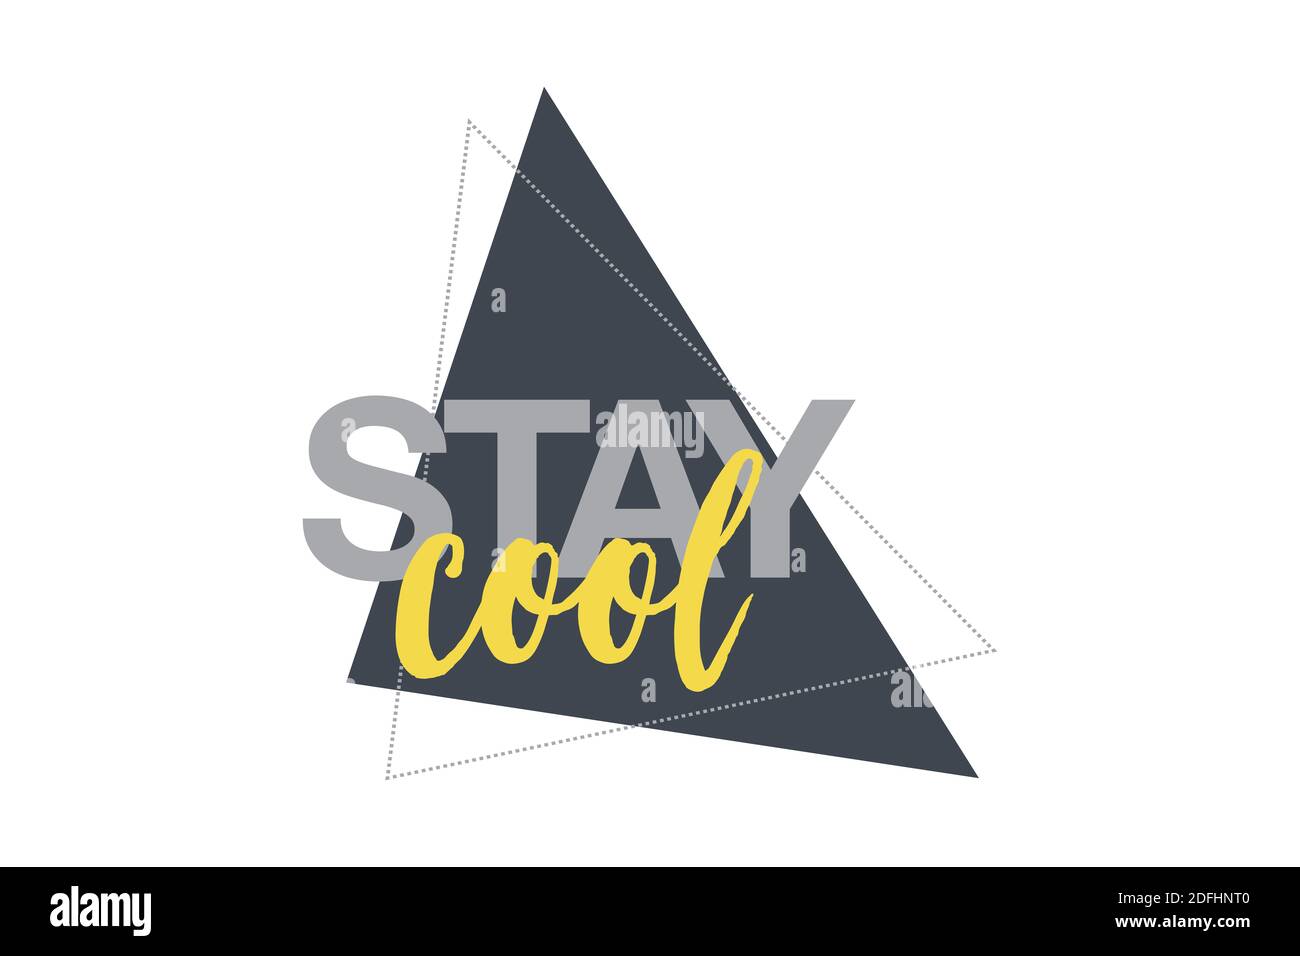 Modernes, auffälliges, lebendiges Grafikdesign eines Sprichwort „Stay Cool“ mit geometrischen Dreiecksformen in Gelb- und Grautönen. Urbane, handschriftliche Typografie Stockfoto